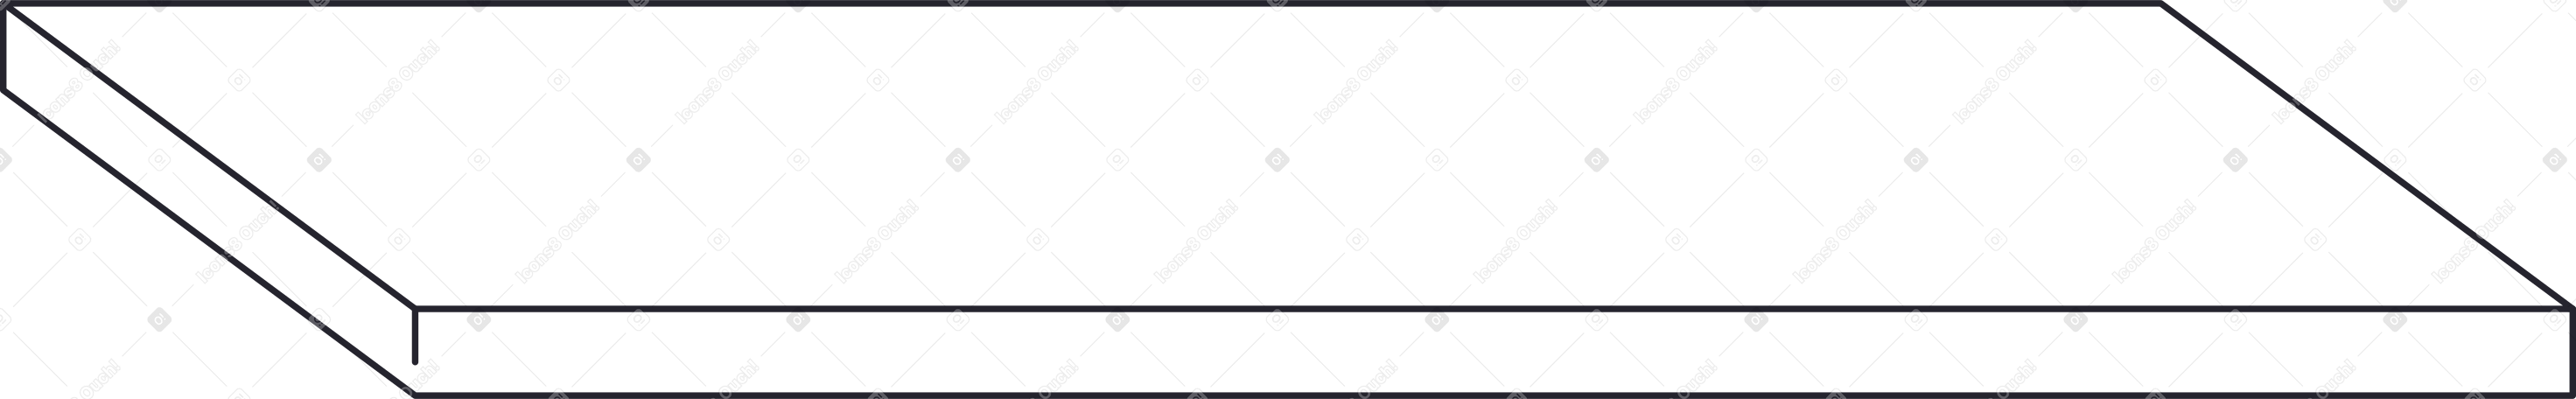 table top tilted Illustration in PNG, SVG